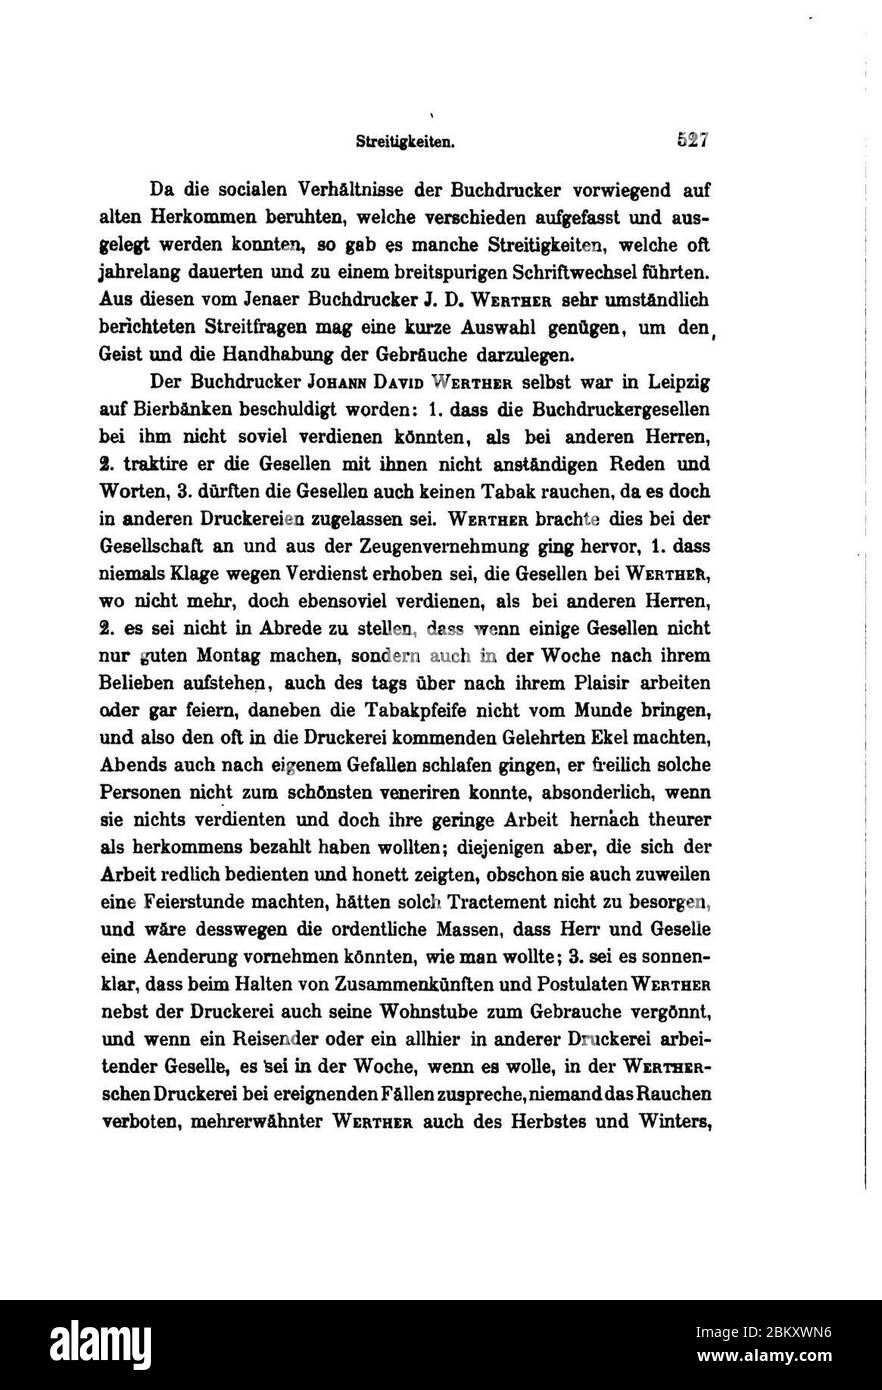 Illustrirte Geschichte der Buchdruckerkunst (Faulmann) 599. Stock Photo